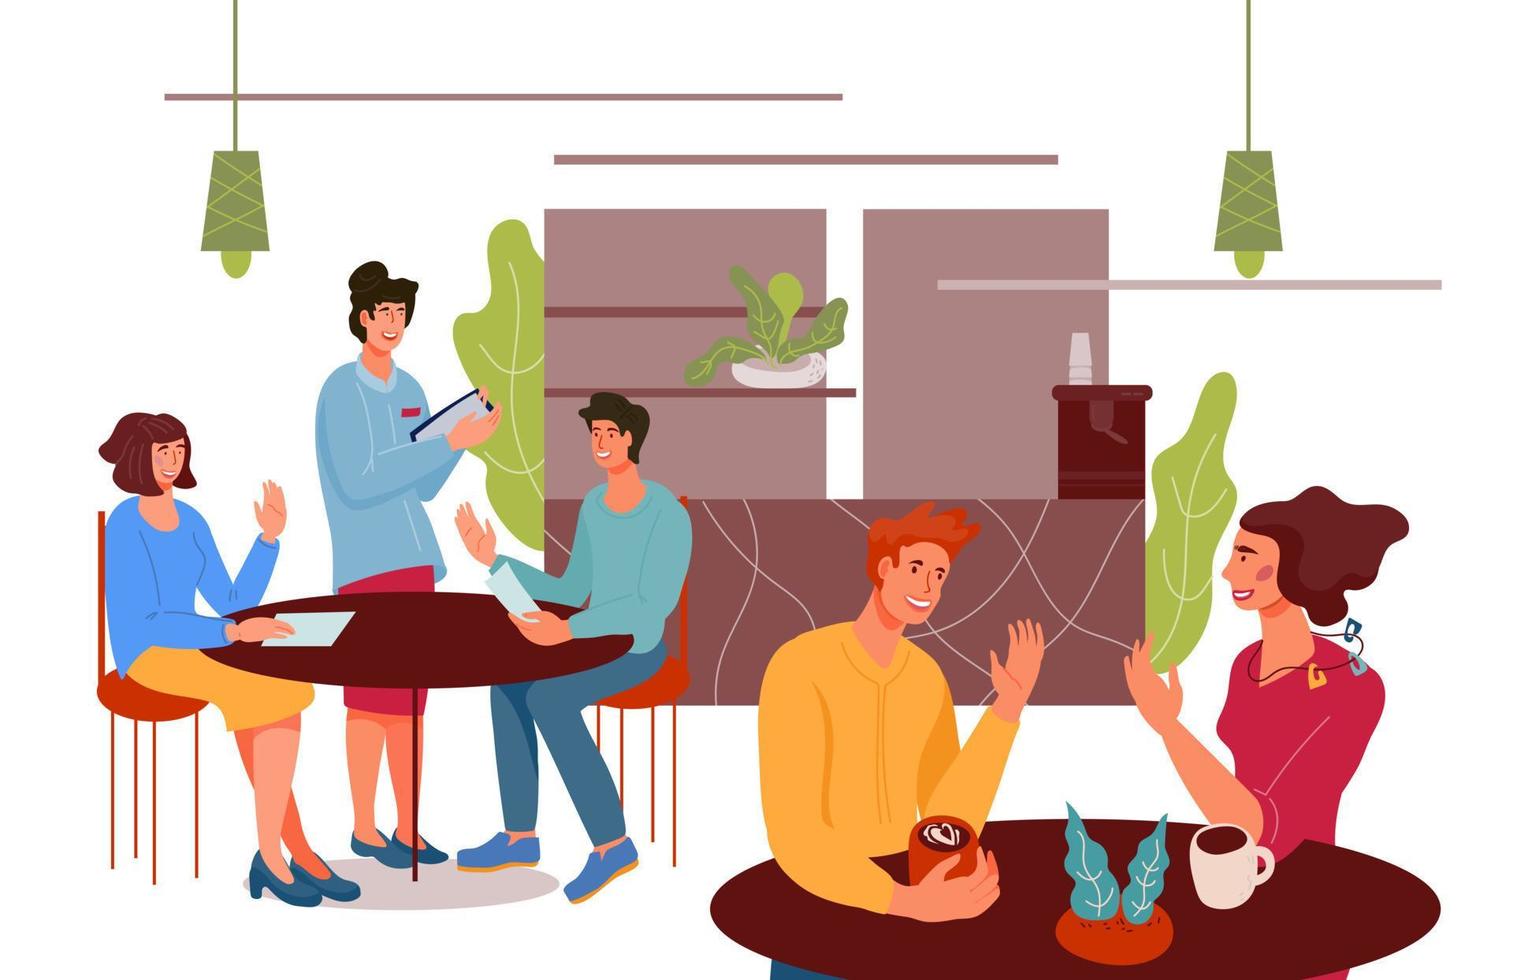 personagens de desenhos animados de pessoas sentados em mesas no café ou cafeteria, ilustração vetorial plana isolada. fundo interior de cafeteria com visitantes ou clientes pedindo refeições e bebidas e garçonete. vetor